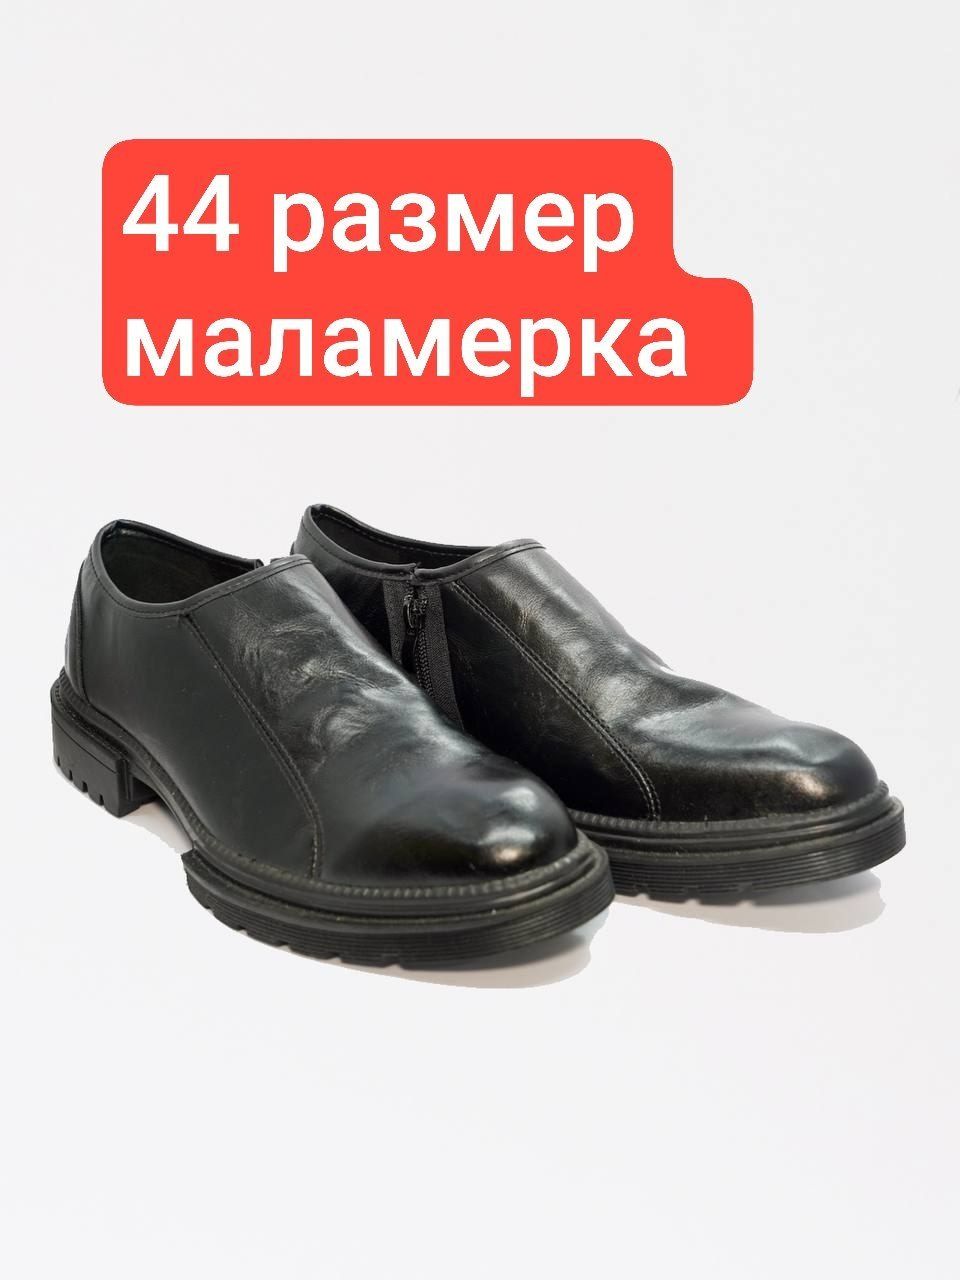 Мужской обувь качества